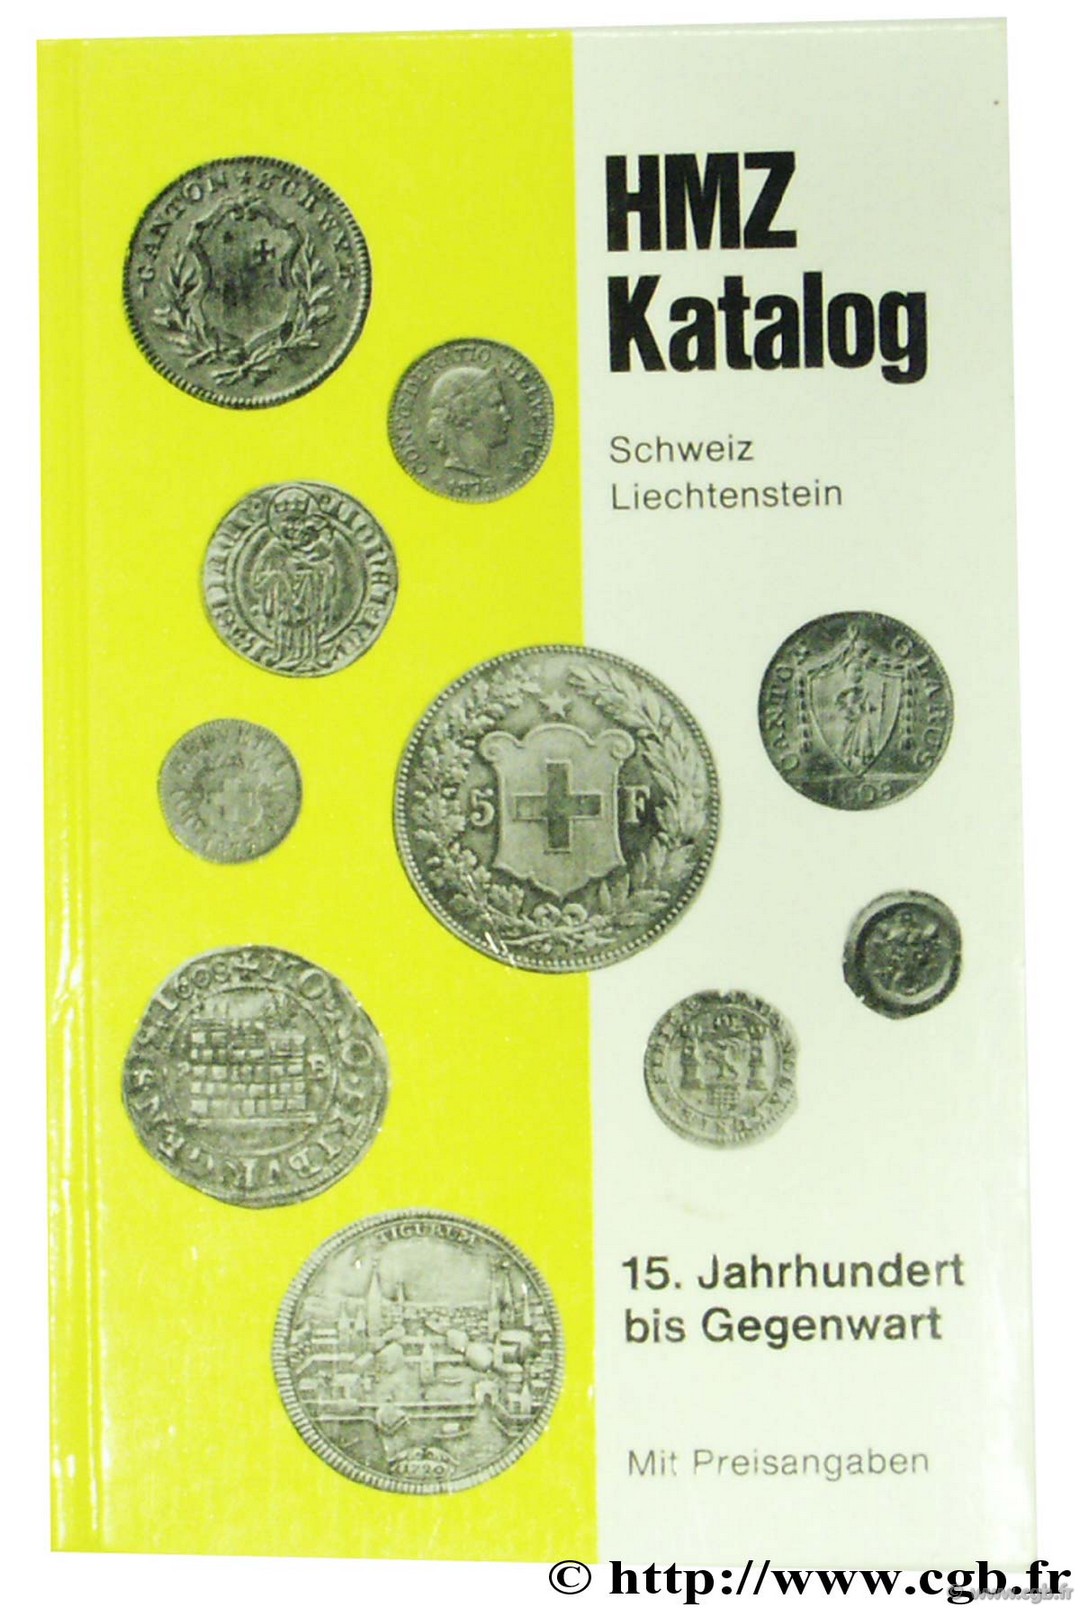 HMZ Katalog, schweiz, Liechtenstein, 15. Jahrhundert bis Gegenwart Anonyme